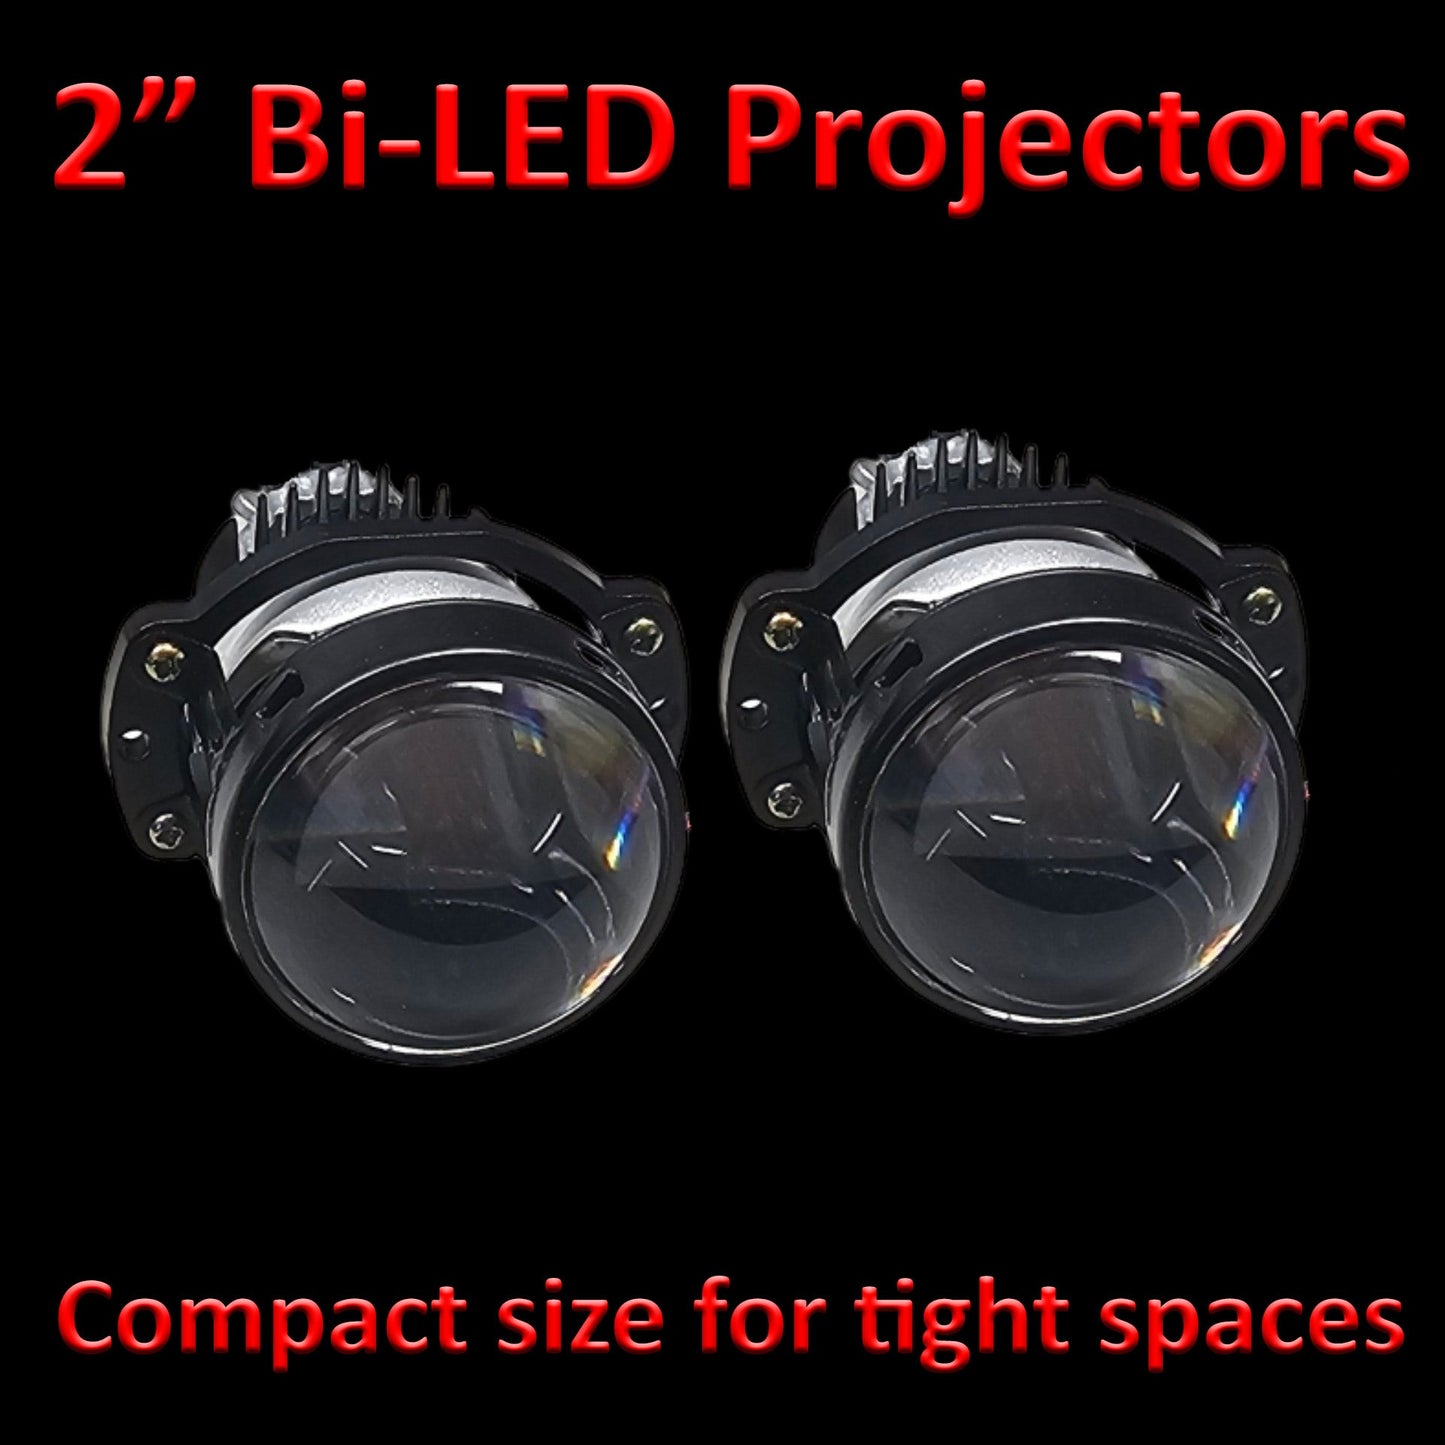 Next Level Neo 2" Bi-LED Projectors